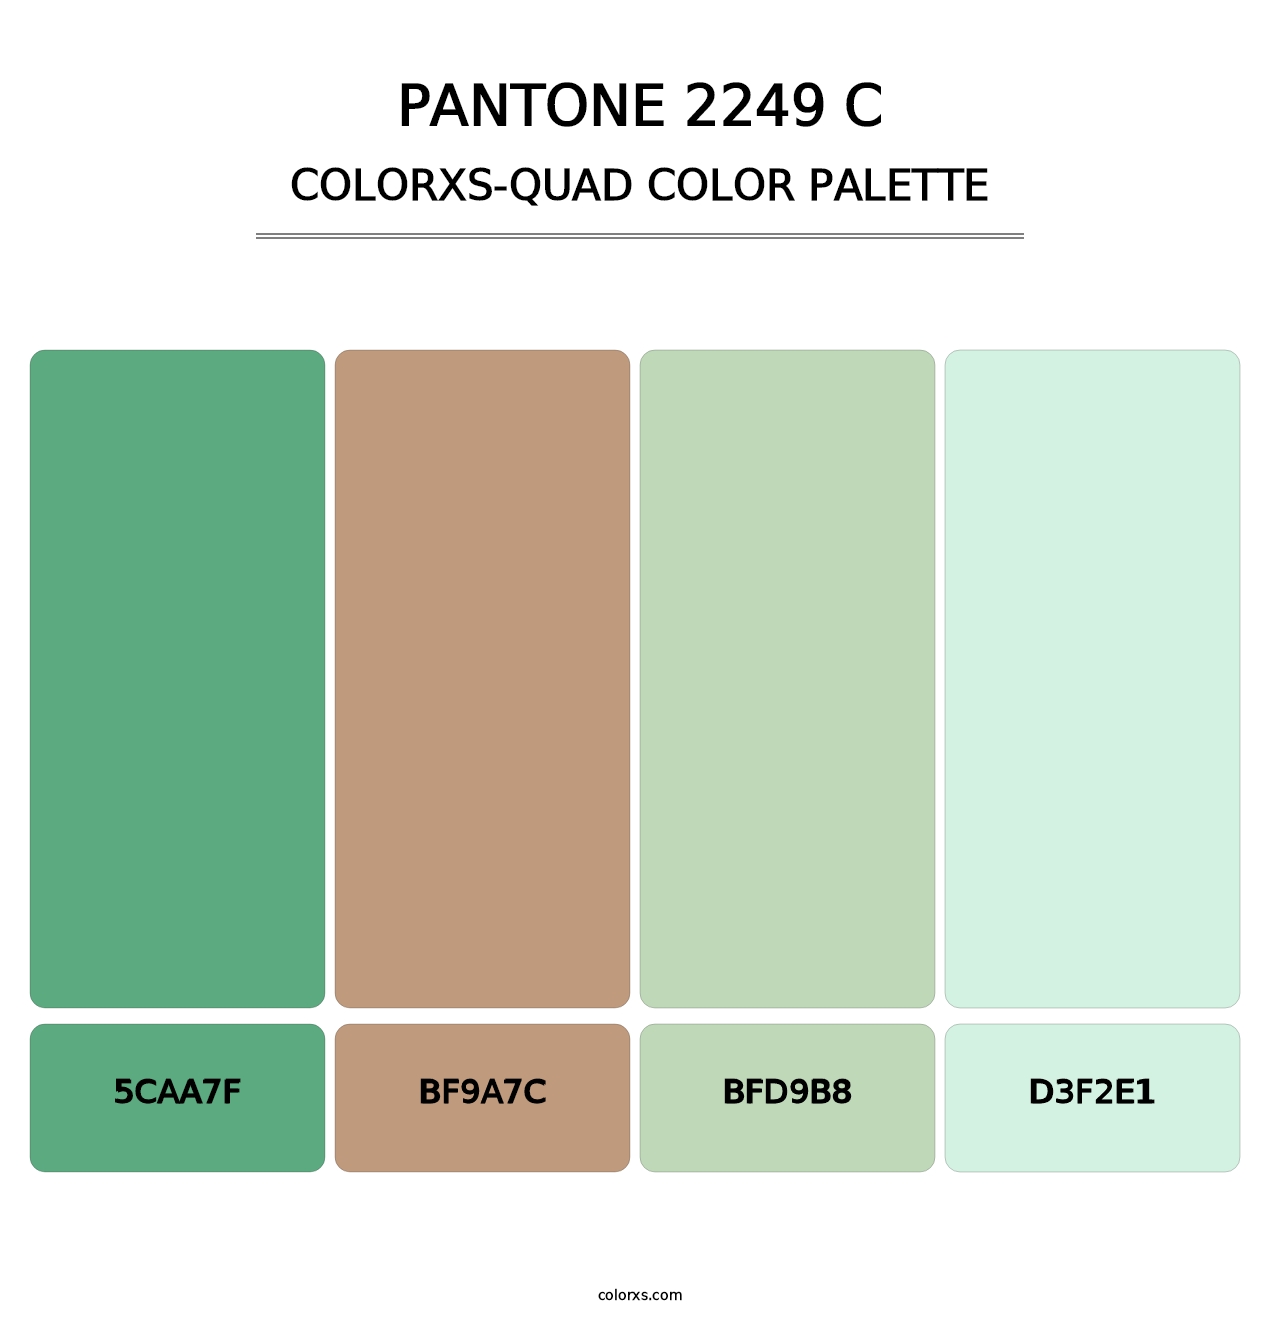 PANTONE 2249 C - Colorxs Quad Palette